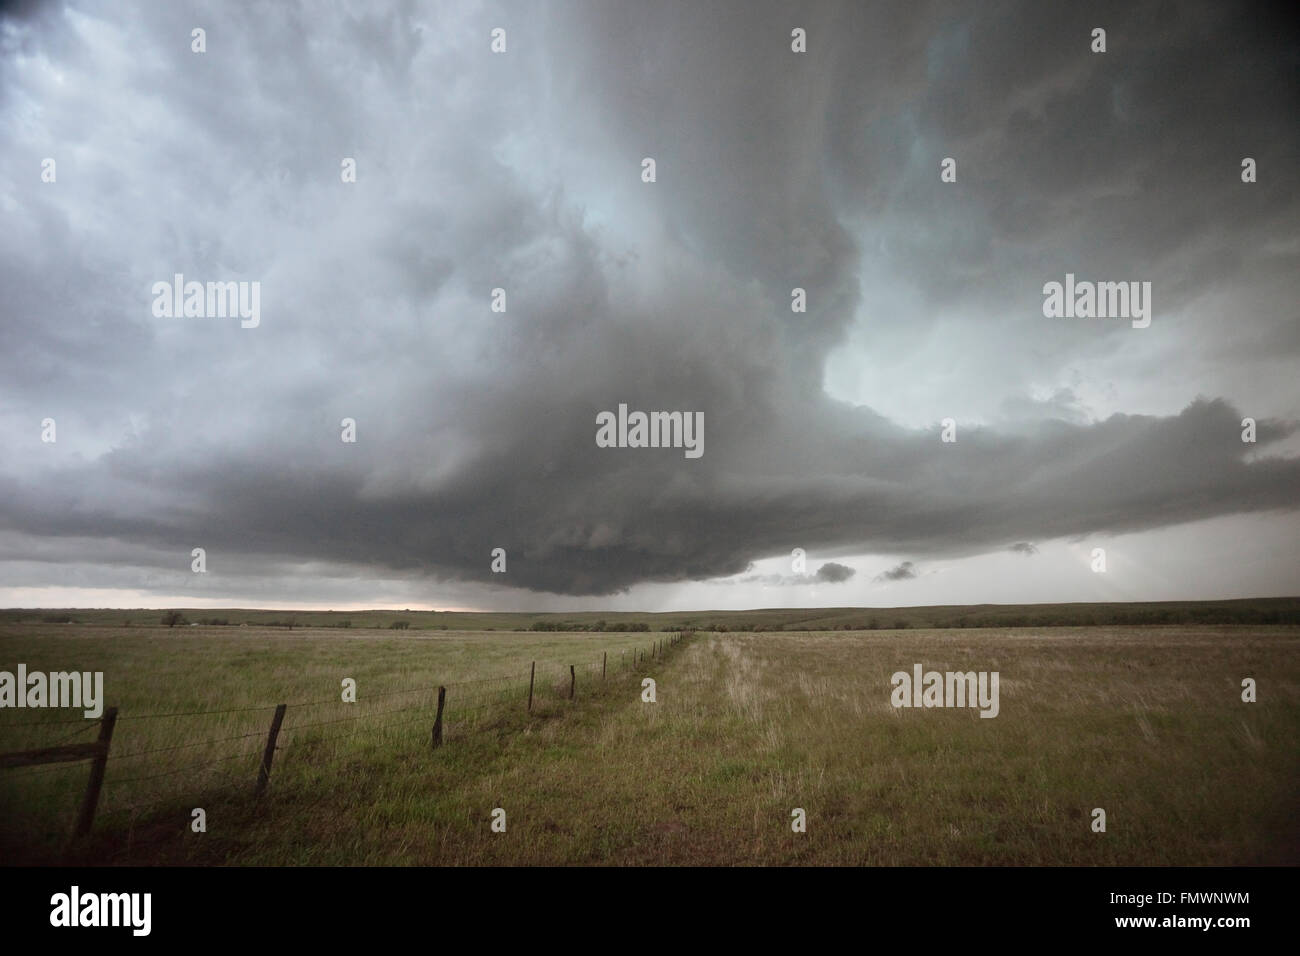 Tornado Warned supercell in Elbert County, Colorado. Stock Photo